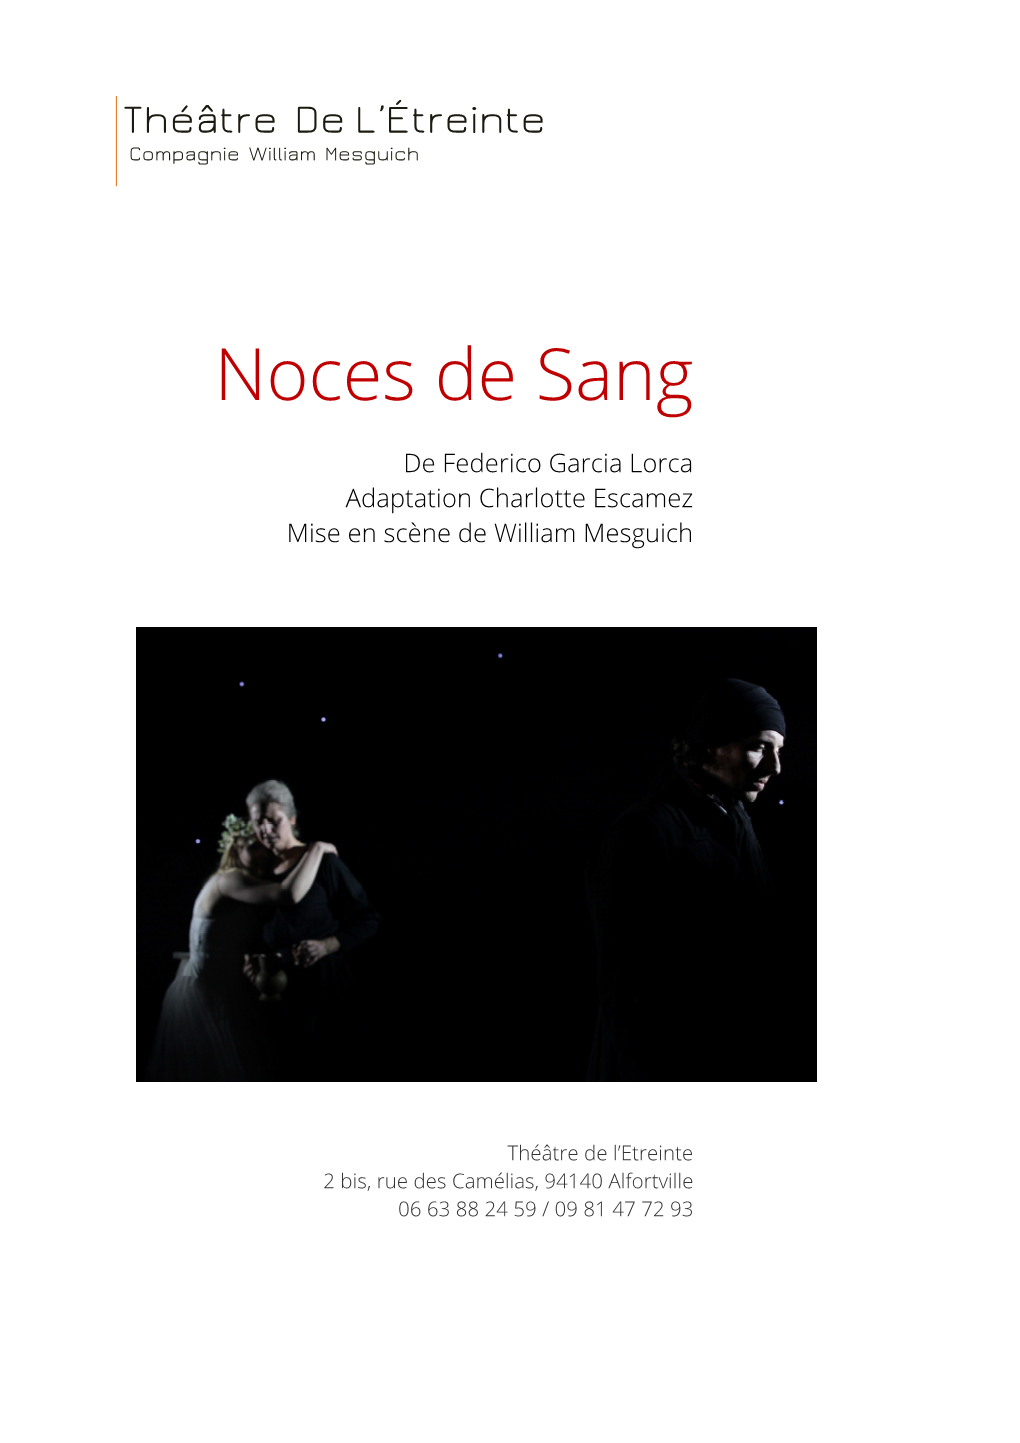 Dossier De Presentation Noces De Sang